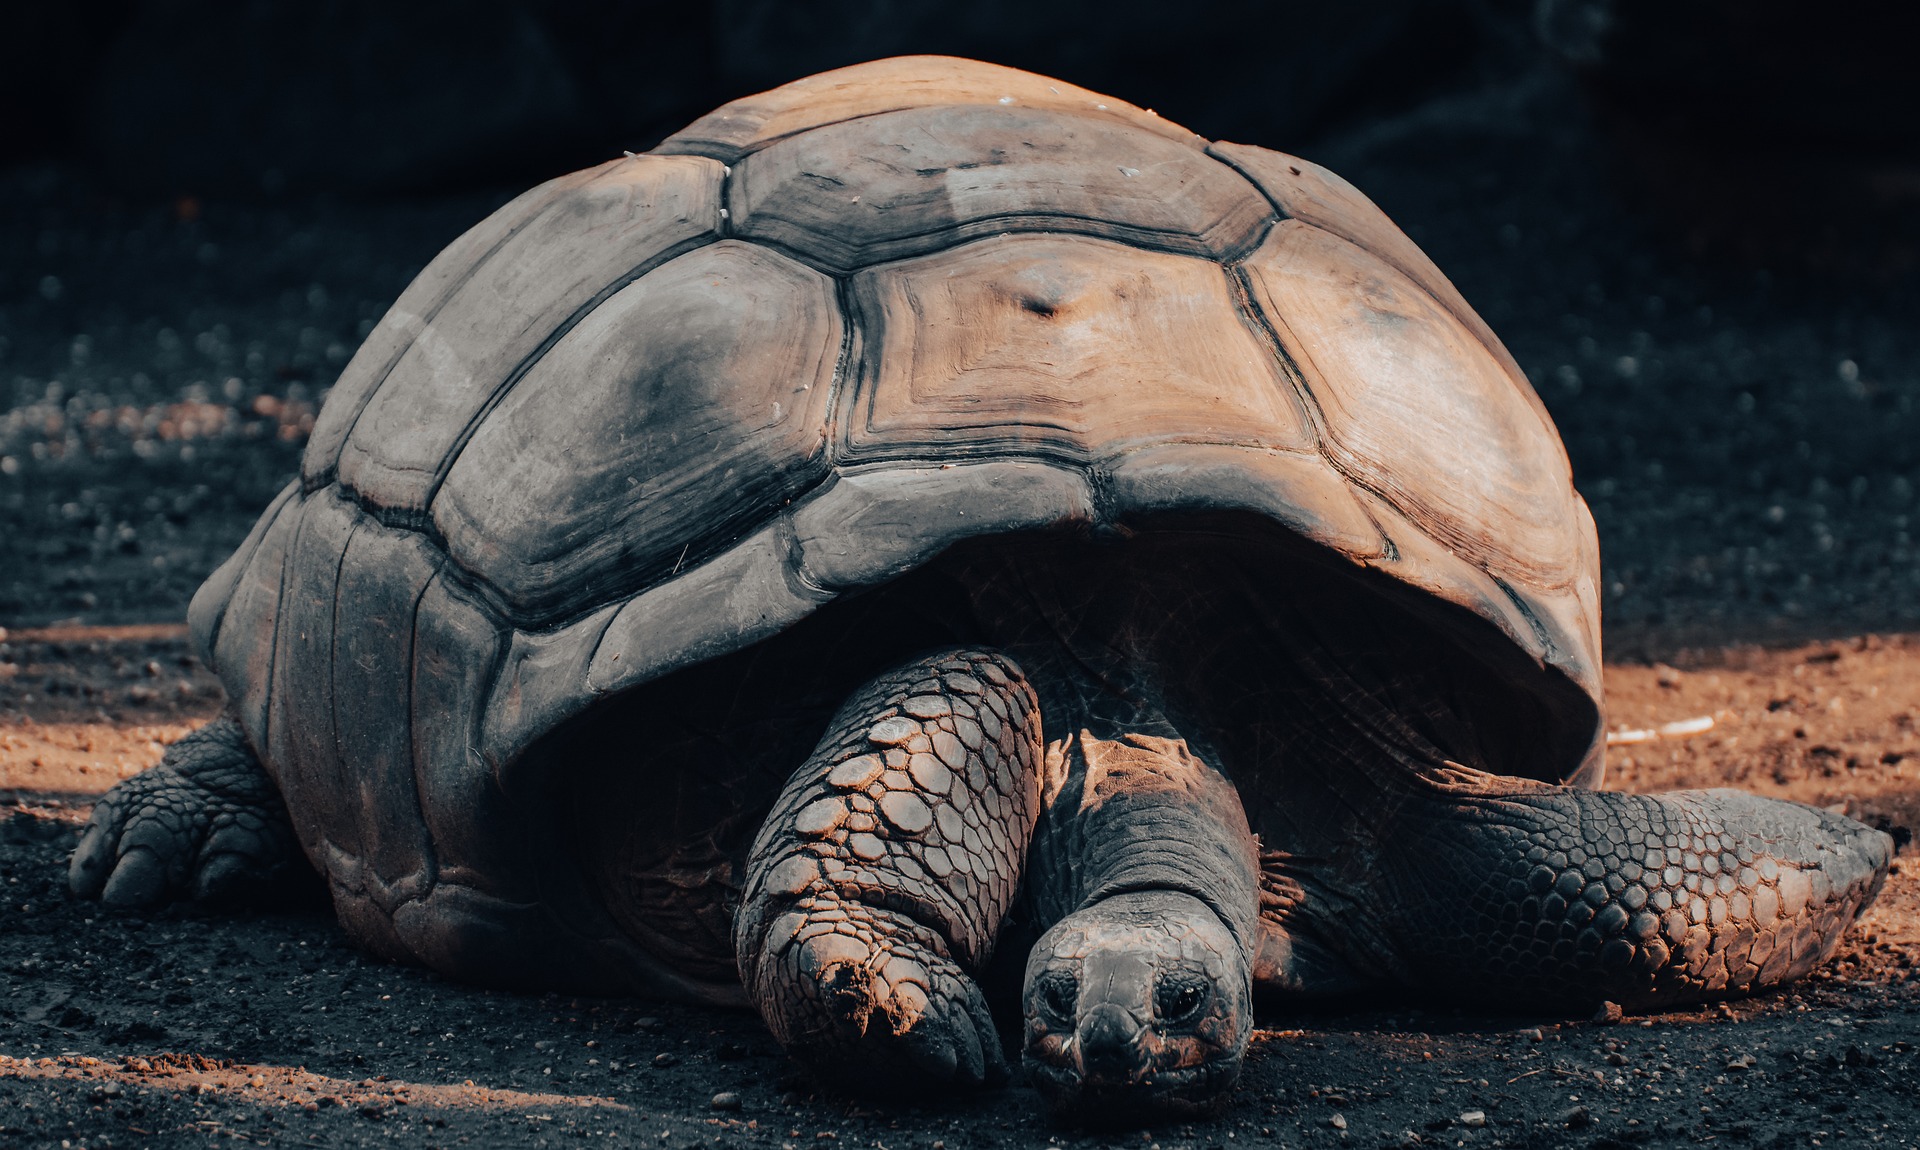 The large, brown Galápagos giant tortoise. Photo: Alexas_Fotos